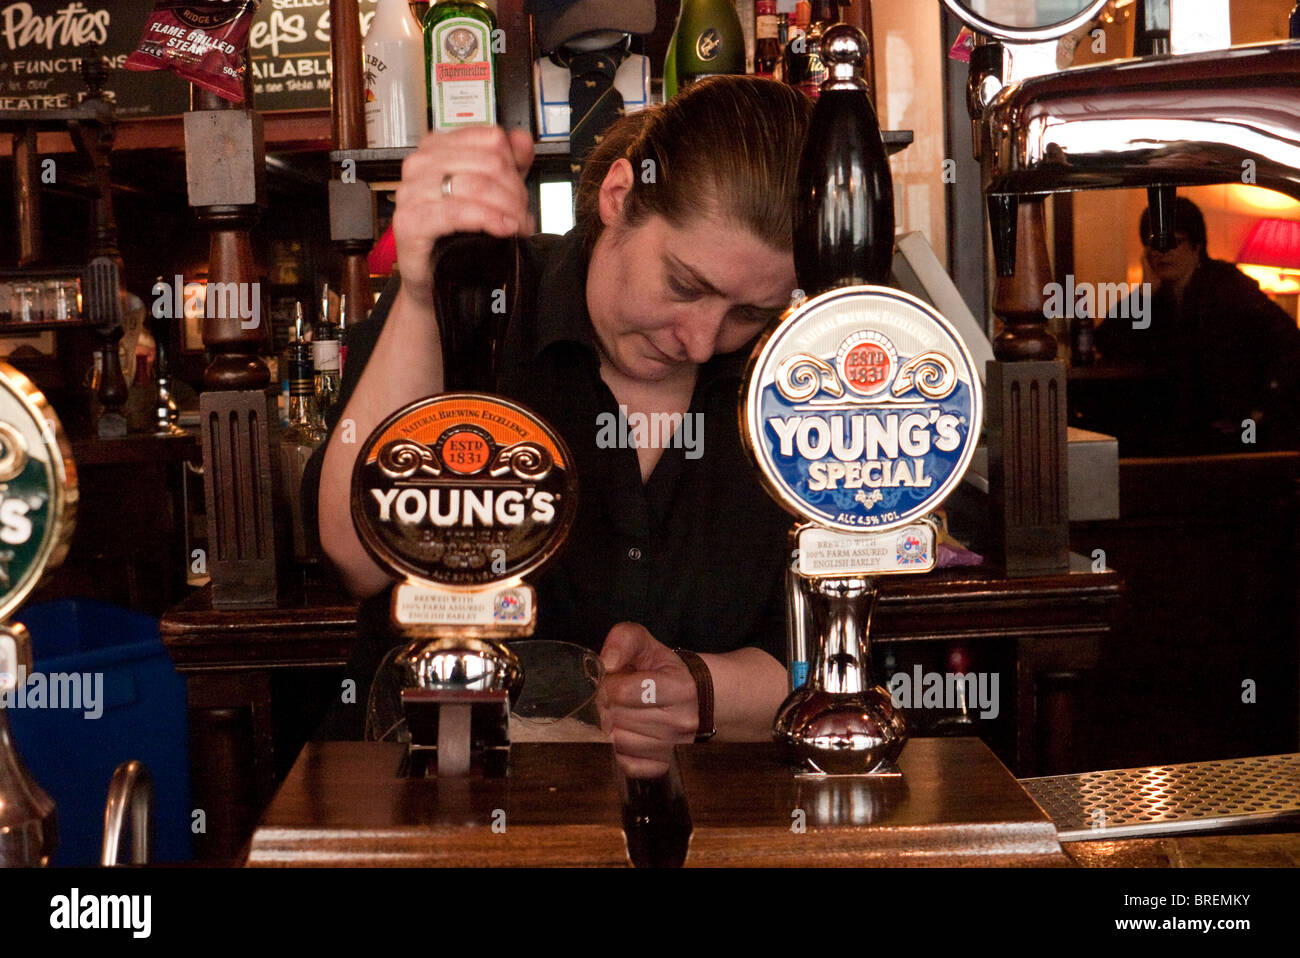 El cordero de un pub tradicional en el centro de Londres dirigidos por jóvenes de Gran Bretaña conocida cervecería real ale Foto de stock